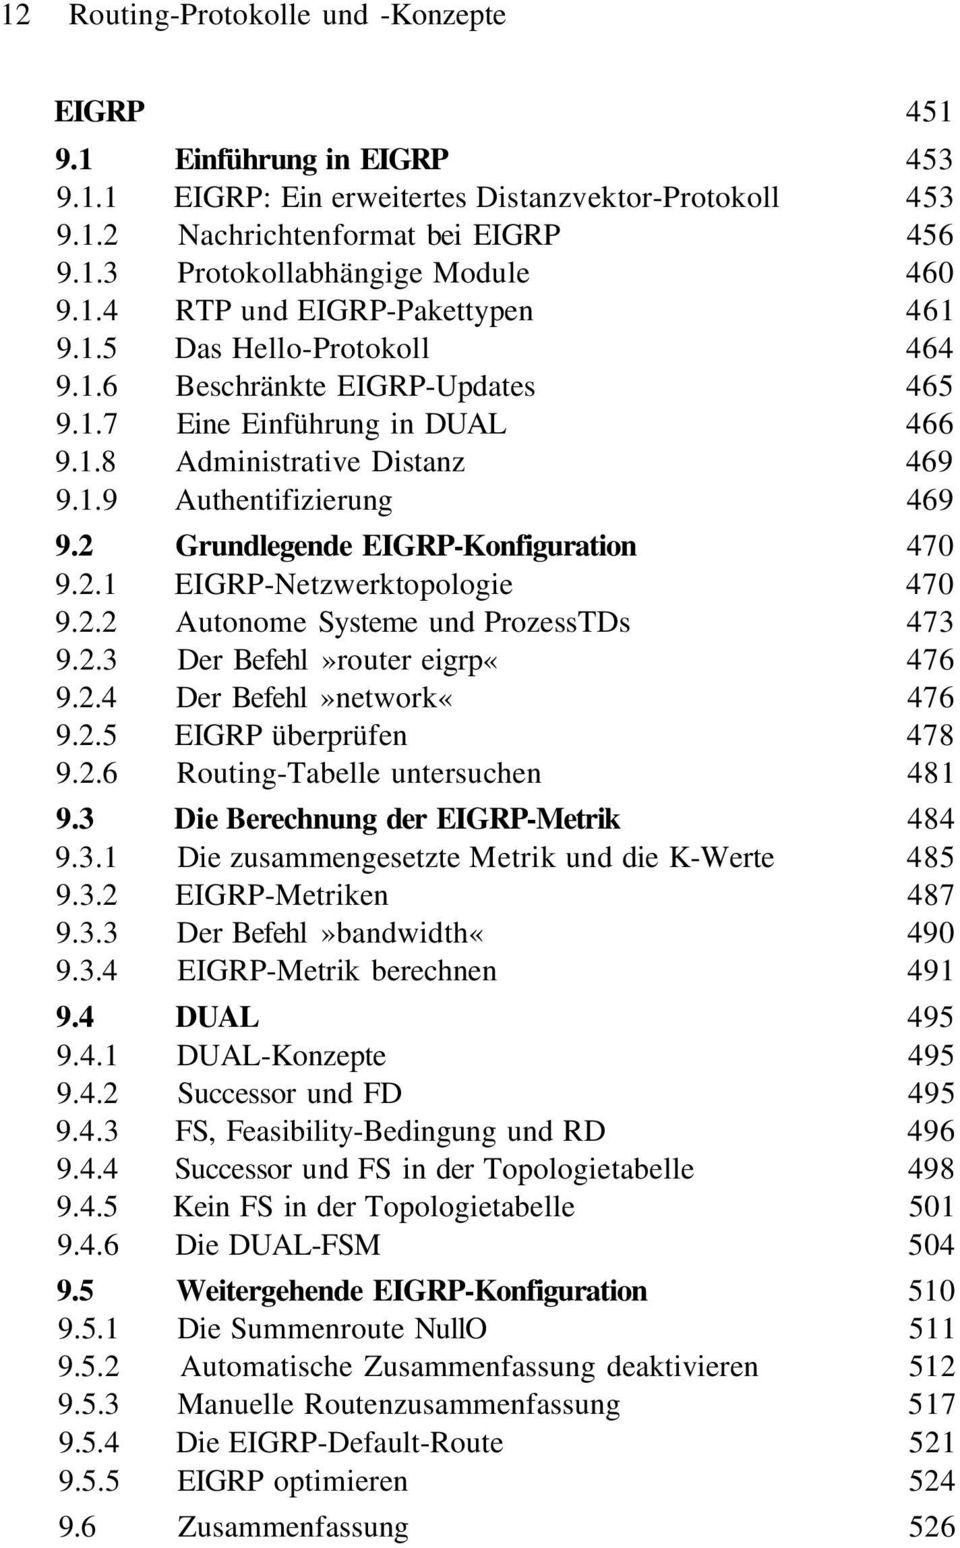 2 Grundlegende EIGRP-Konfiguration 470 9.2.1 EIGRP-Netzwerktopologie 470 9.2.2 Autonome Systeme und ProzessTDs 473 9.2.3 Der Befehl»router eigrp«476 9.2.4 Der Befehl»network«476 9.2.5 EIGRP überprüfen 478 9.